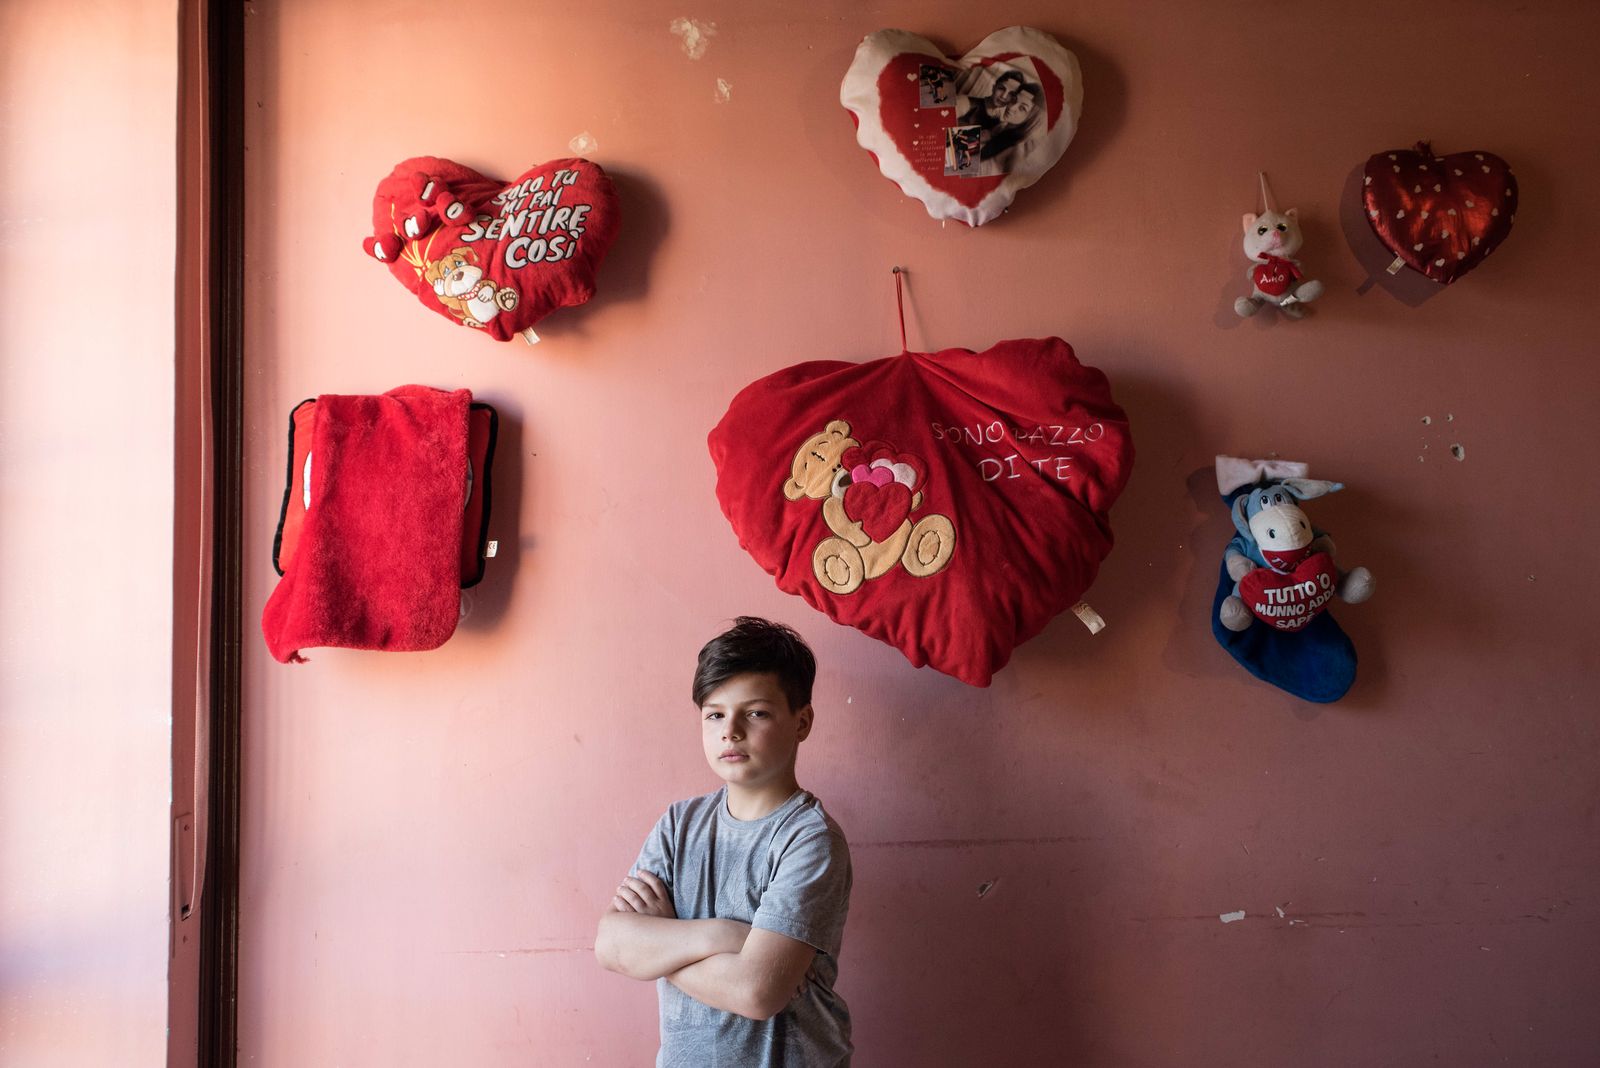 © Camillo Pasquarelli - Eman Doria, 9 years old, poses at his home in Casalnuovo.